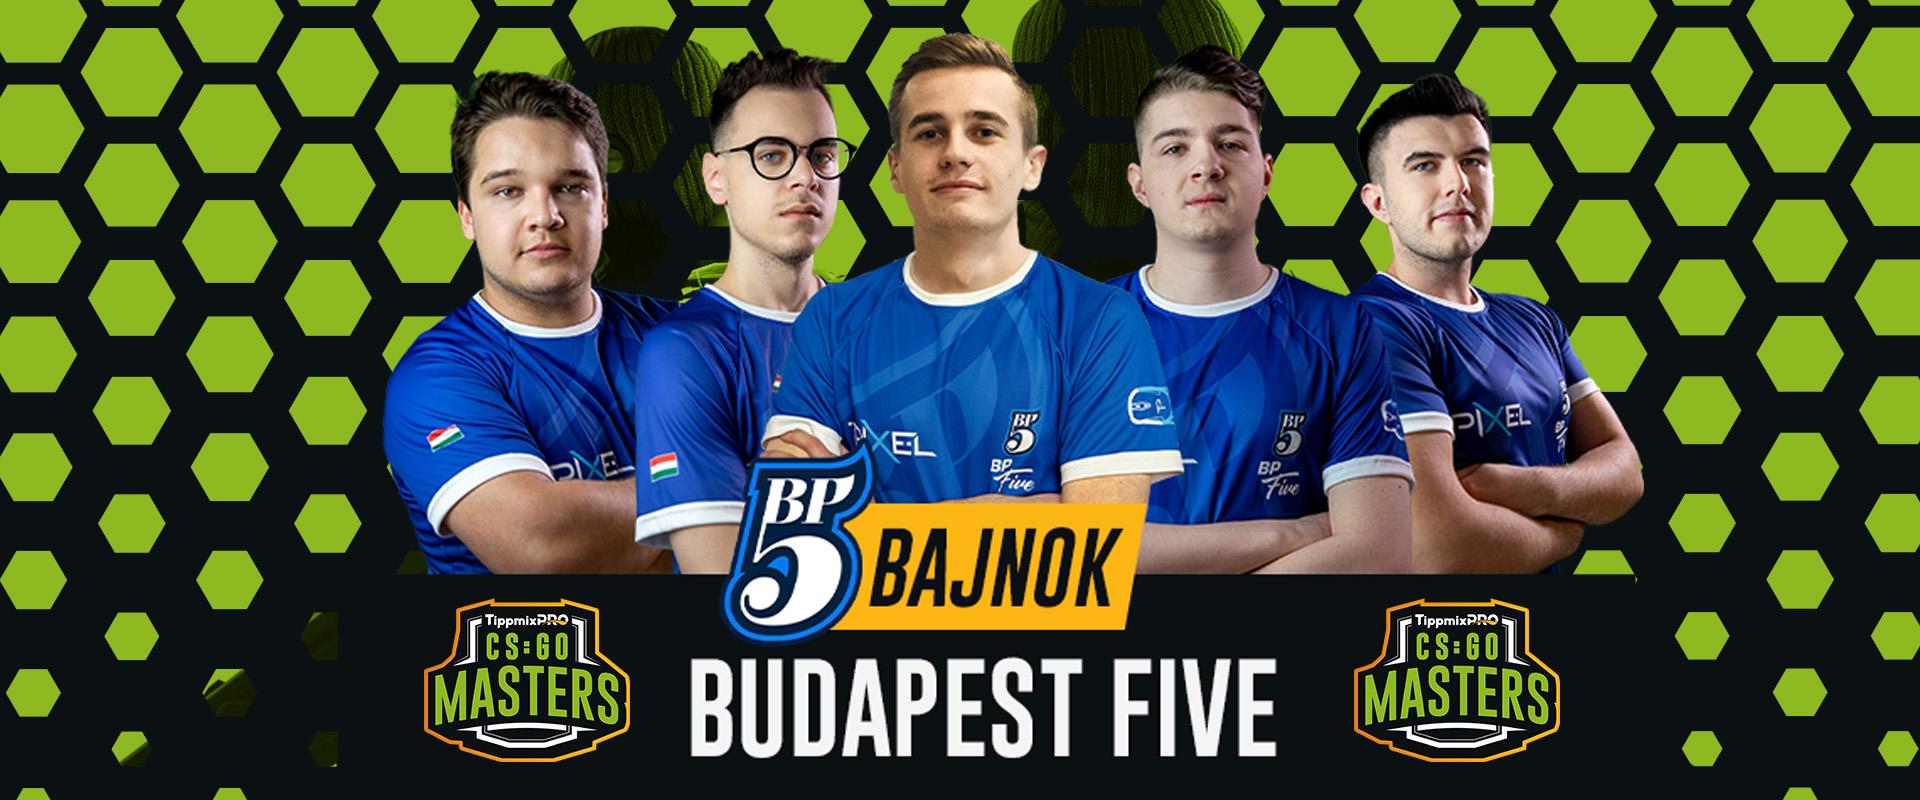 TippmixPro CS:GO Masters: Megállíthatatlan volt a Budapest Five a döntőben